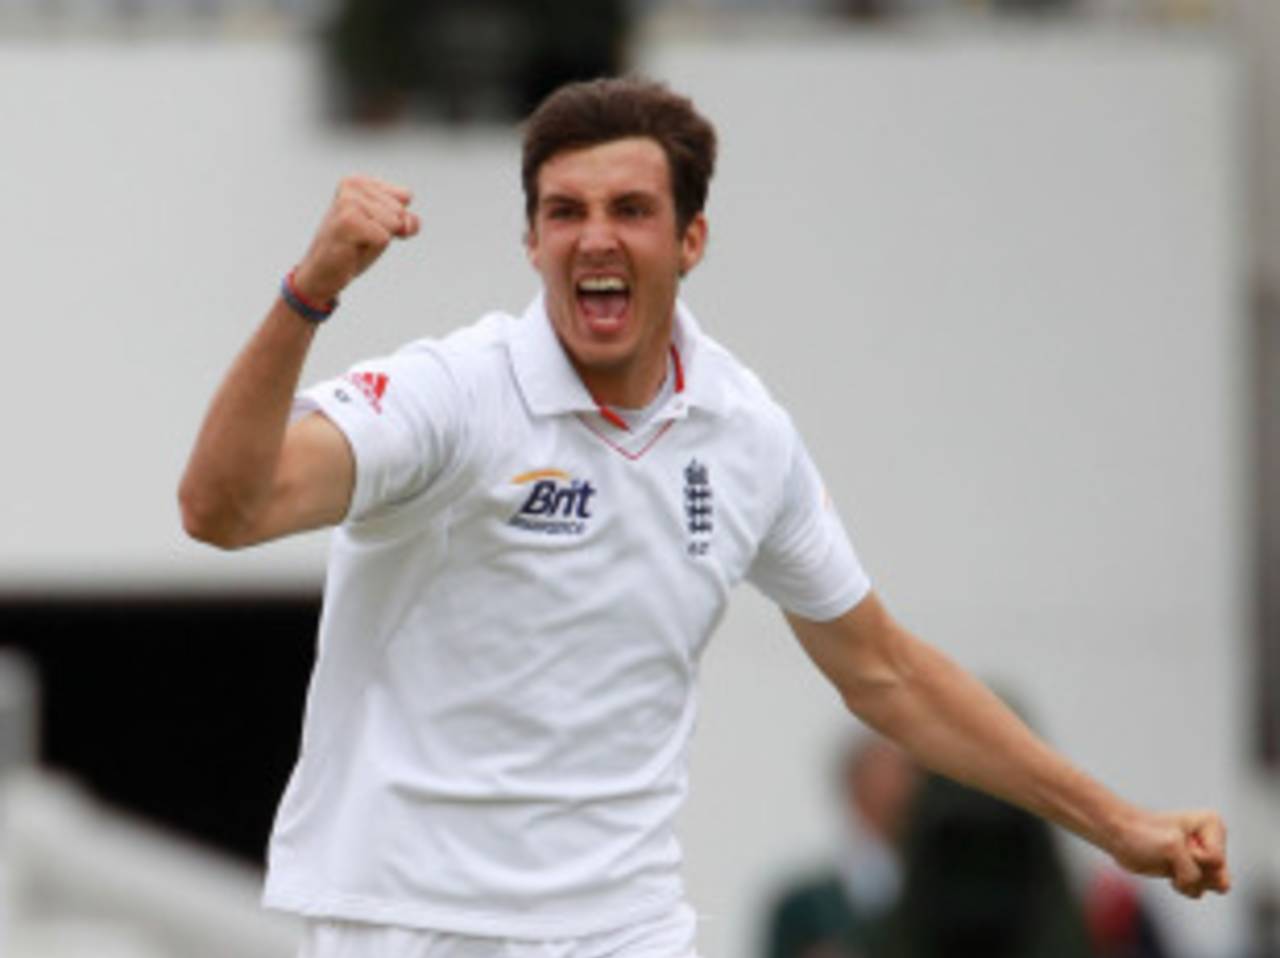 Steven Finn ended Tillakaratne Dilshan's long innings, England v Sri Lanka, 2nd Test, Lord's, June 5, 2011